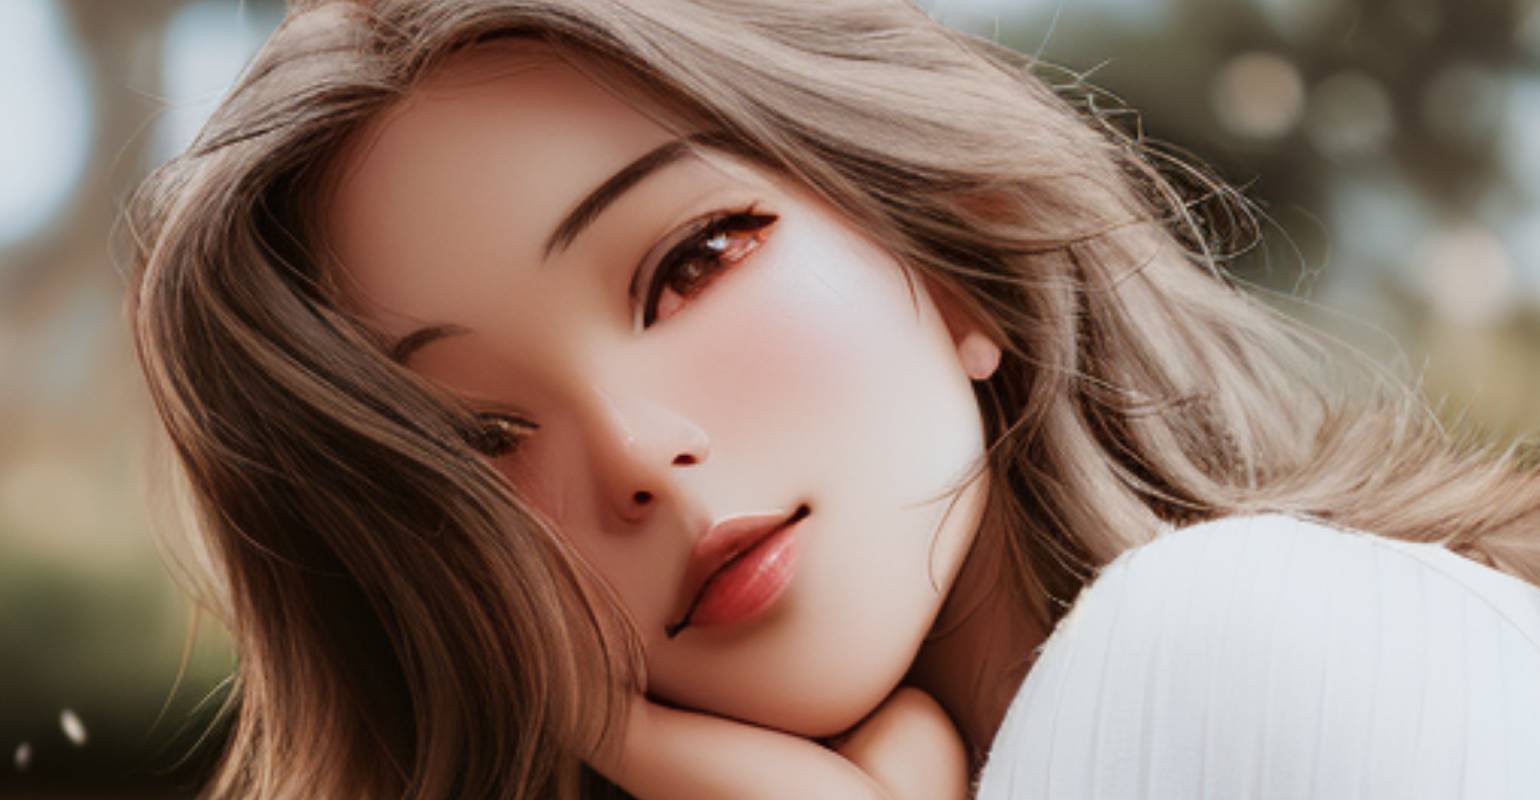 Женски портрет с Fotor AI Manga Filter